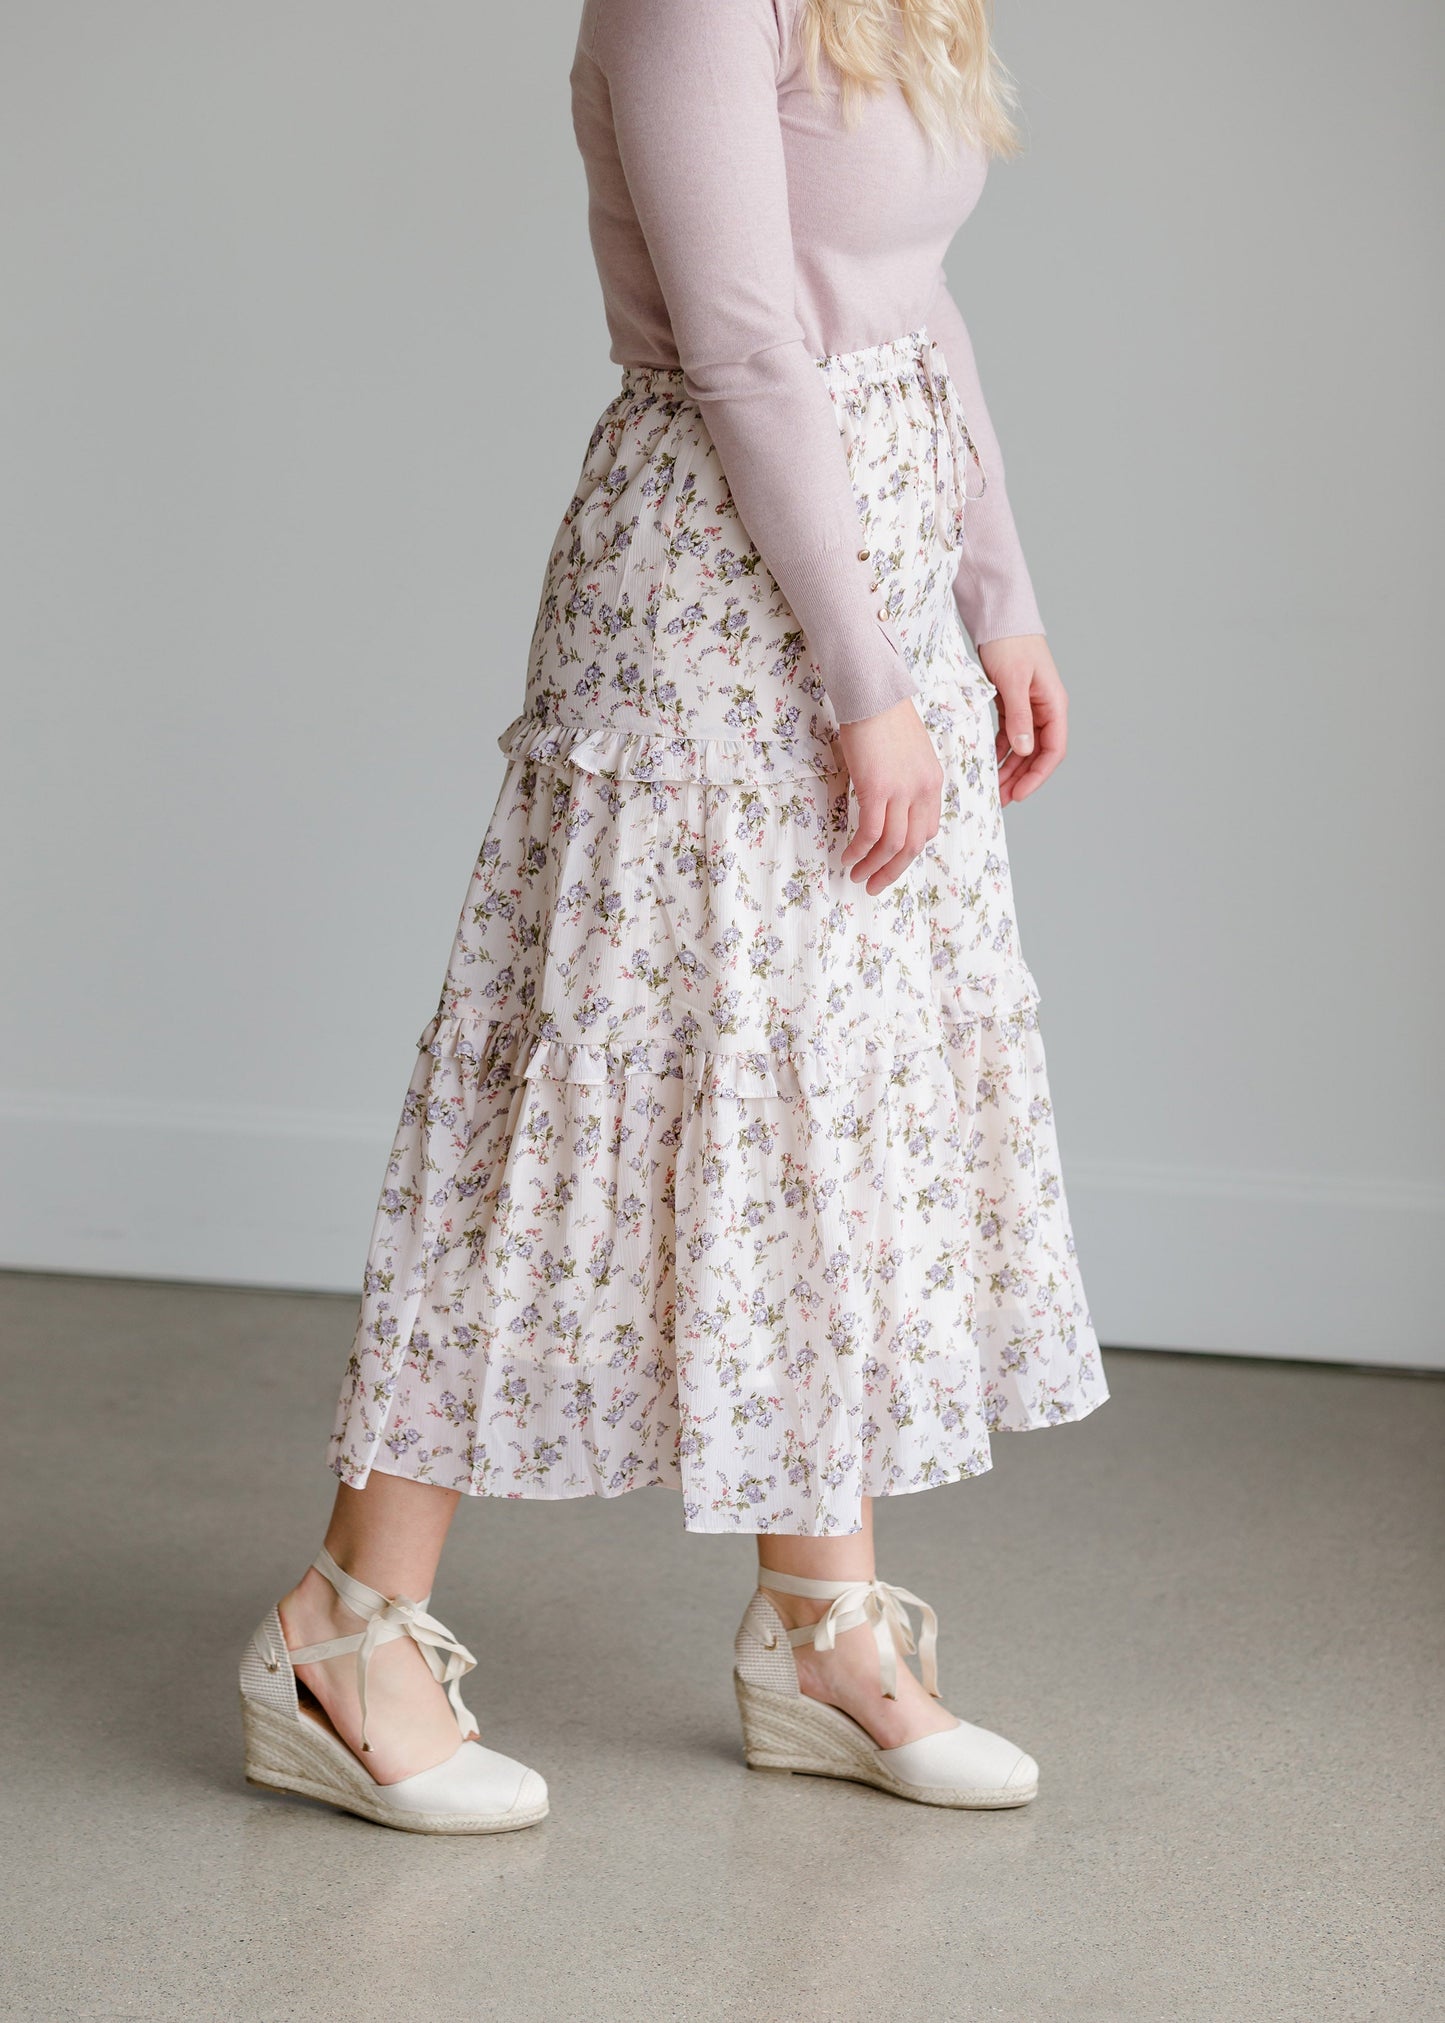 Tiered Floral High Waist Skirt - FINAL SALE Skirts